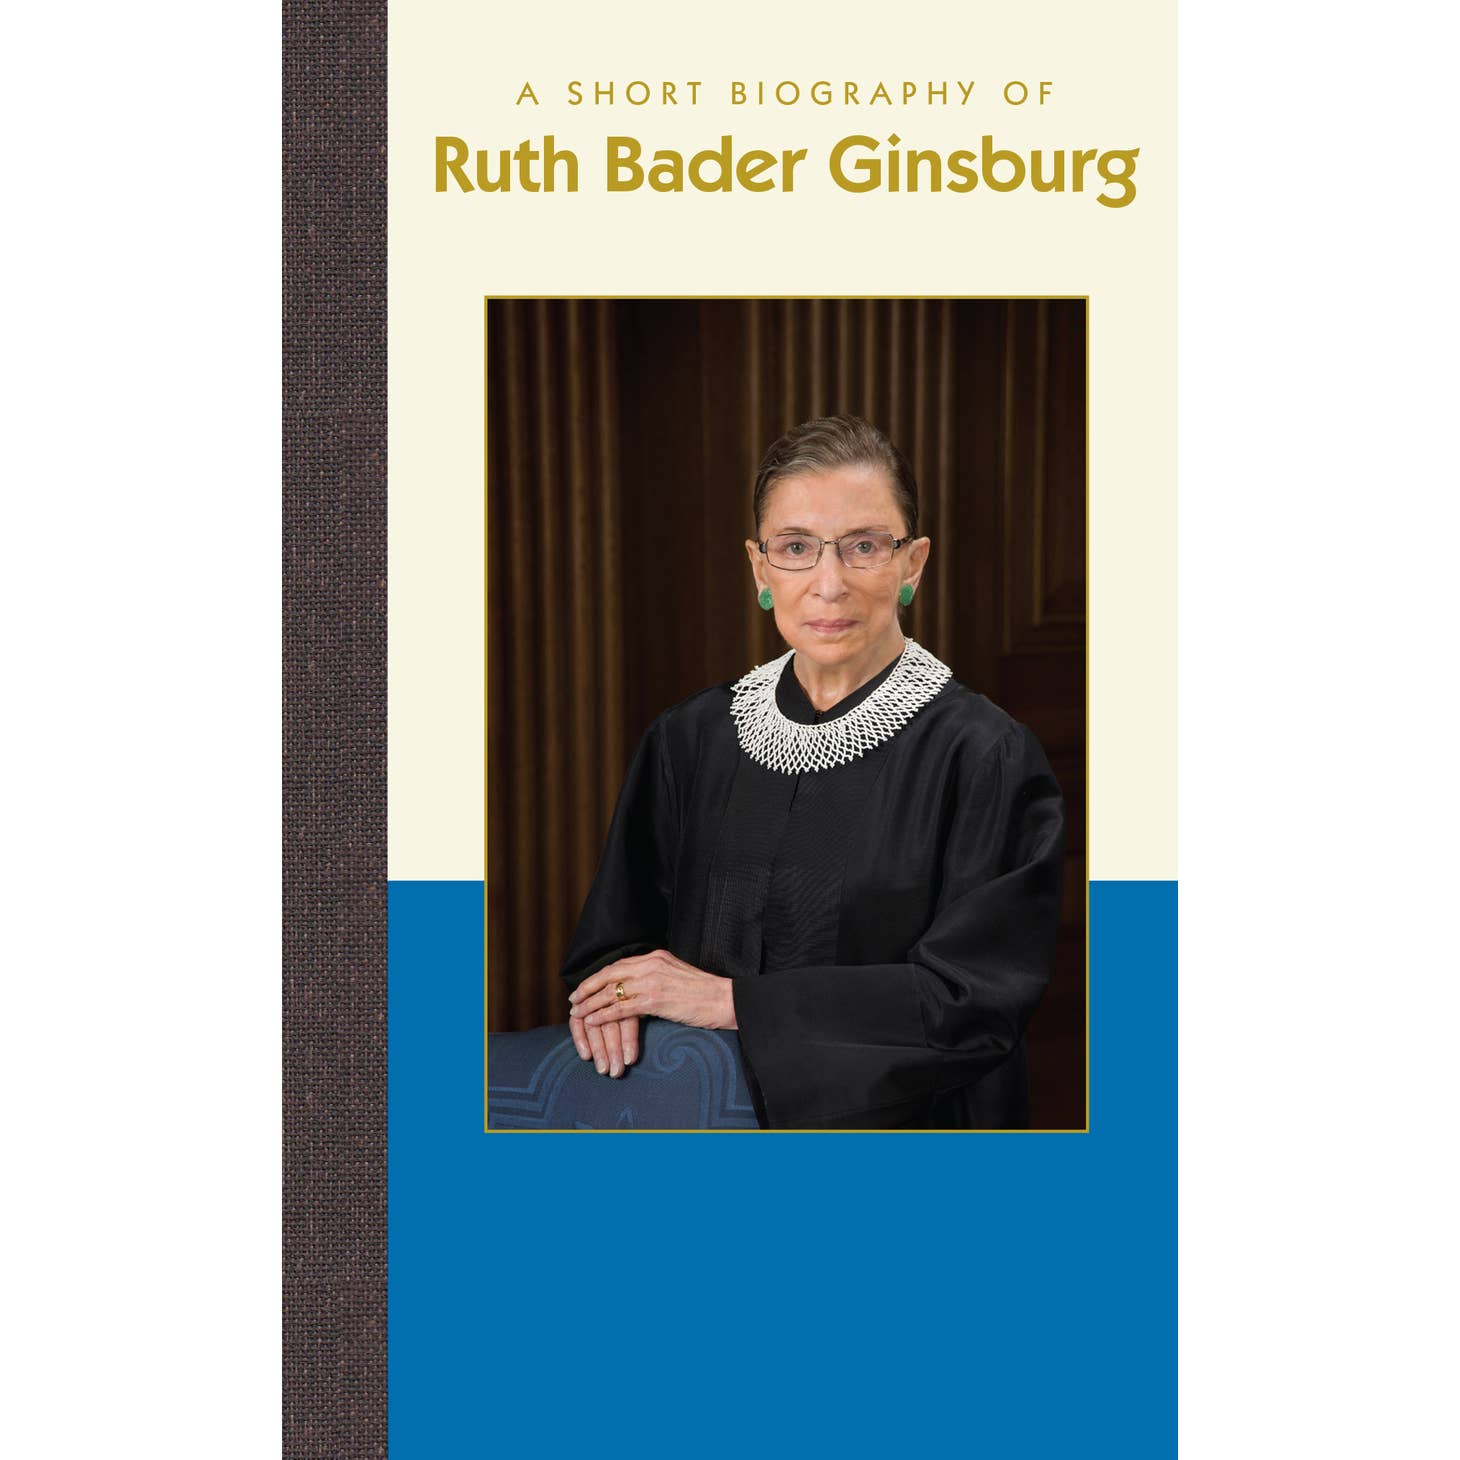 Short Biography of Ruth Bader Ginsburg